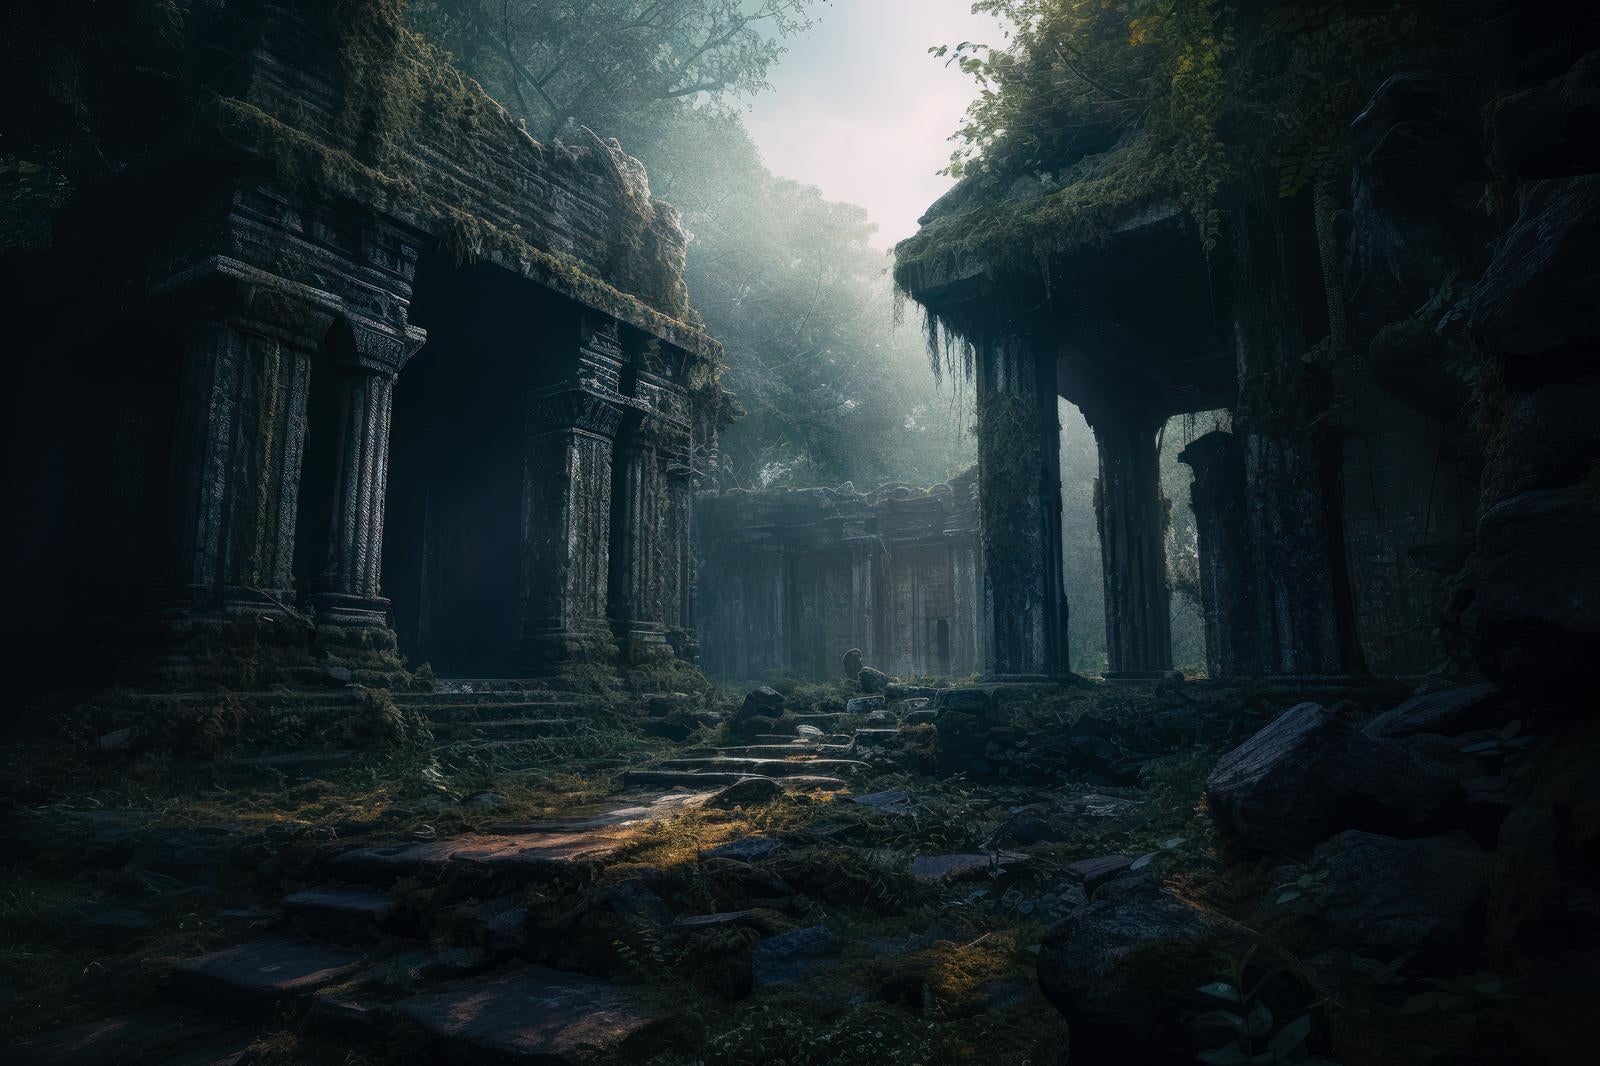 「緑の闇に光る過去 ジャングルと古代遺跡」の写真